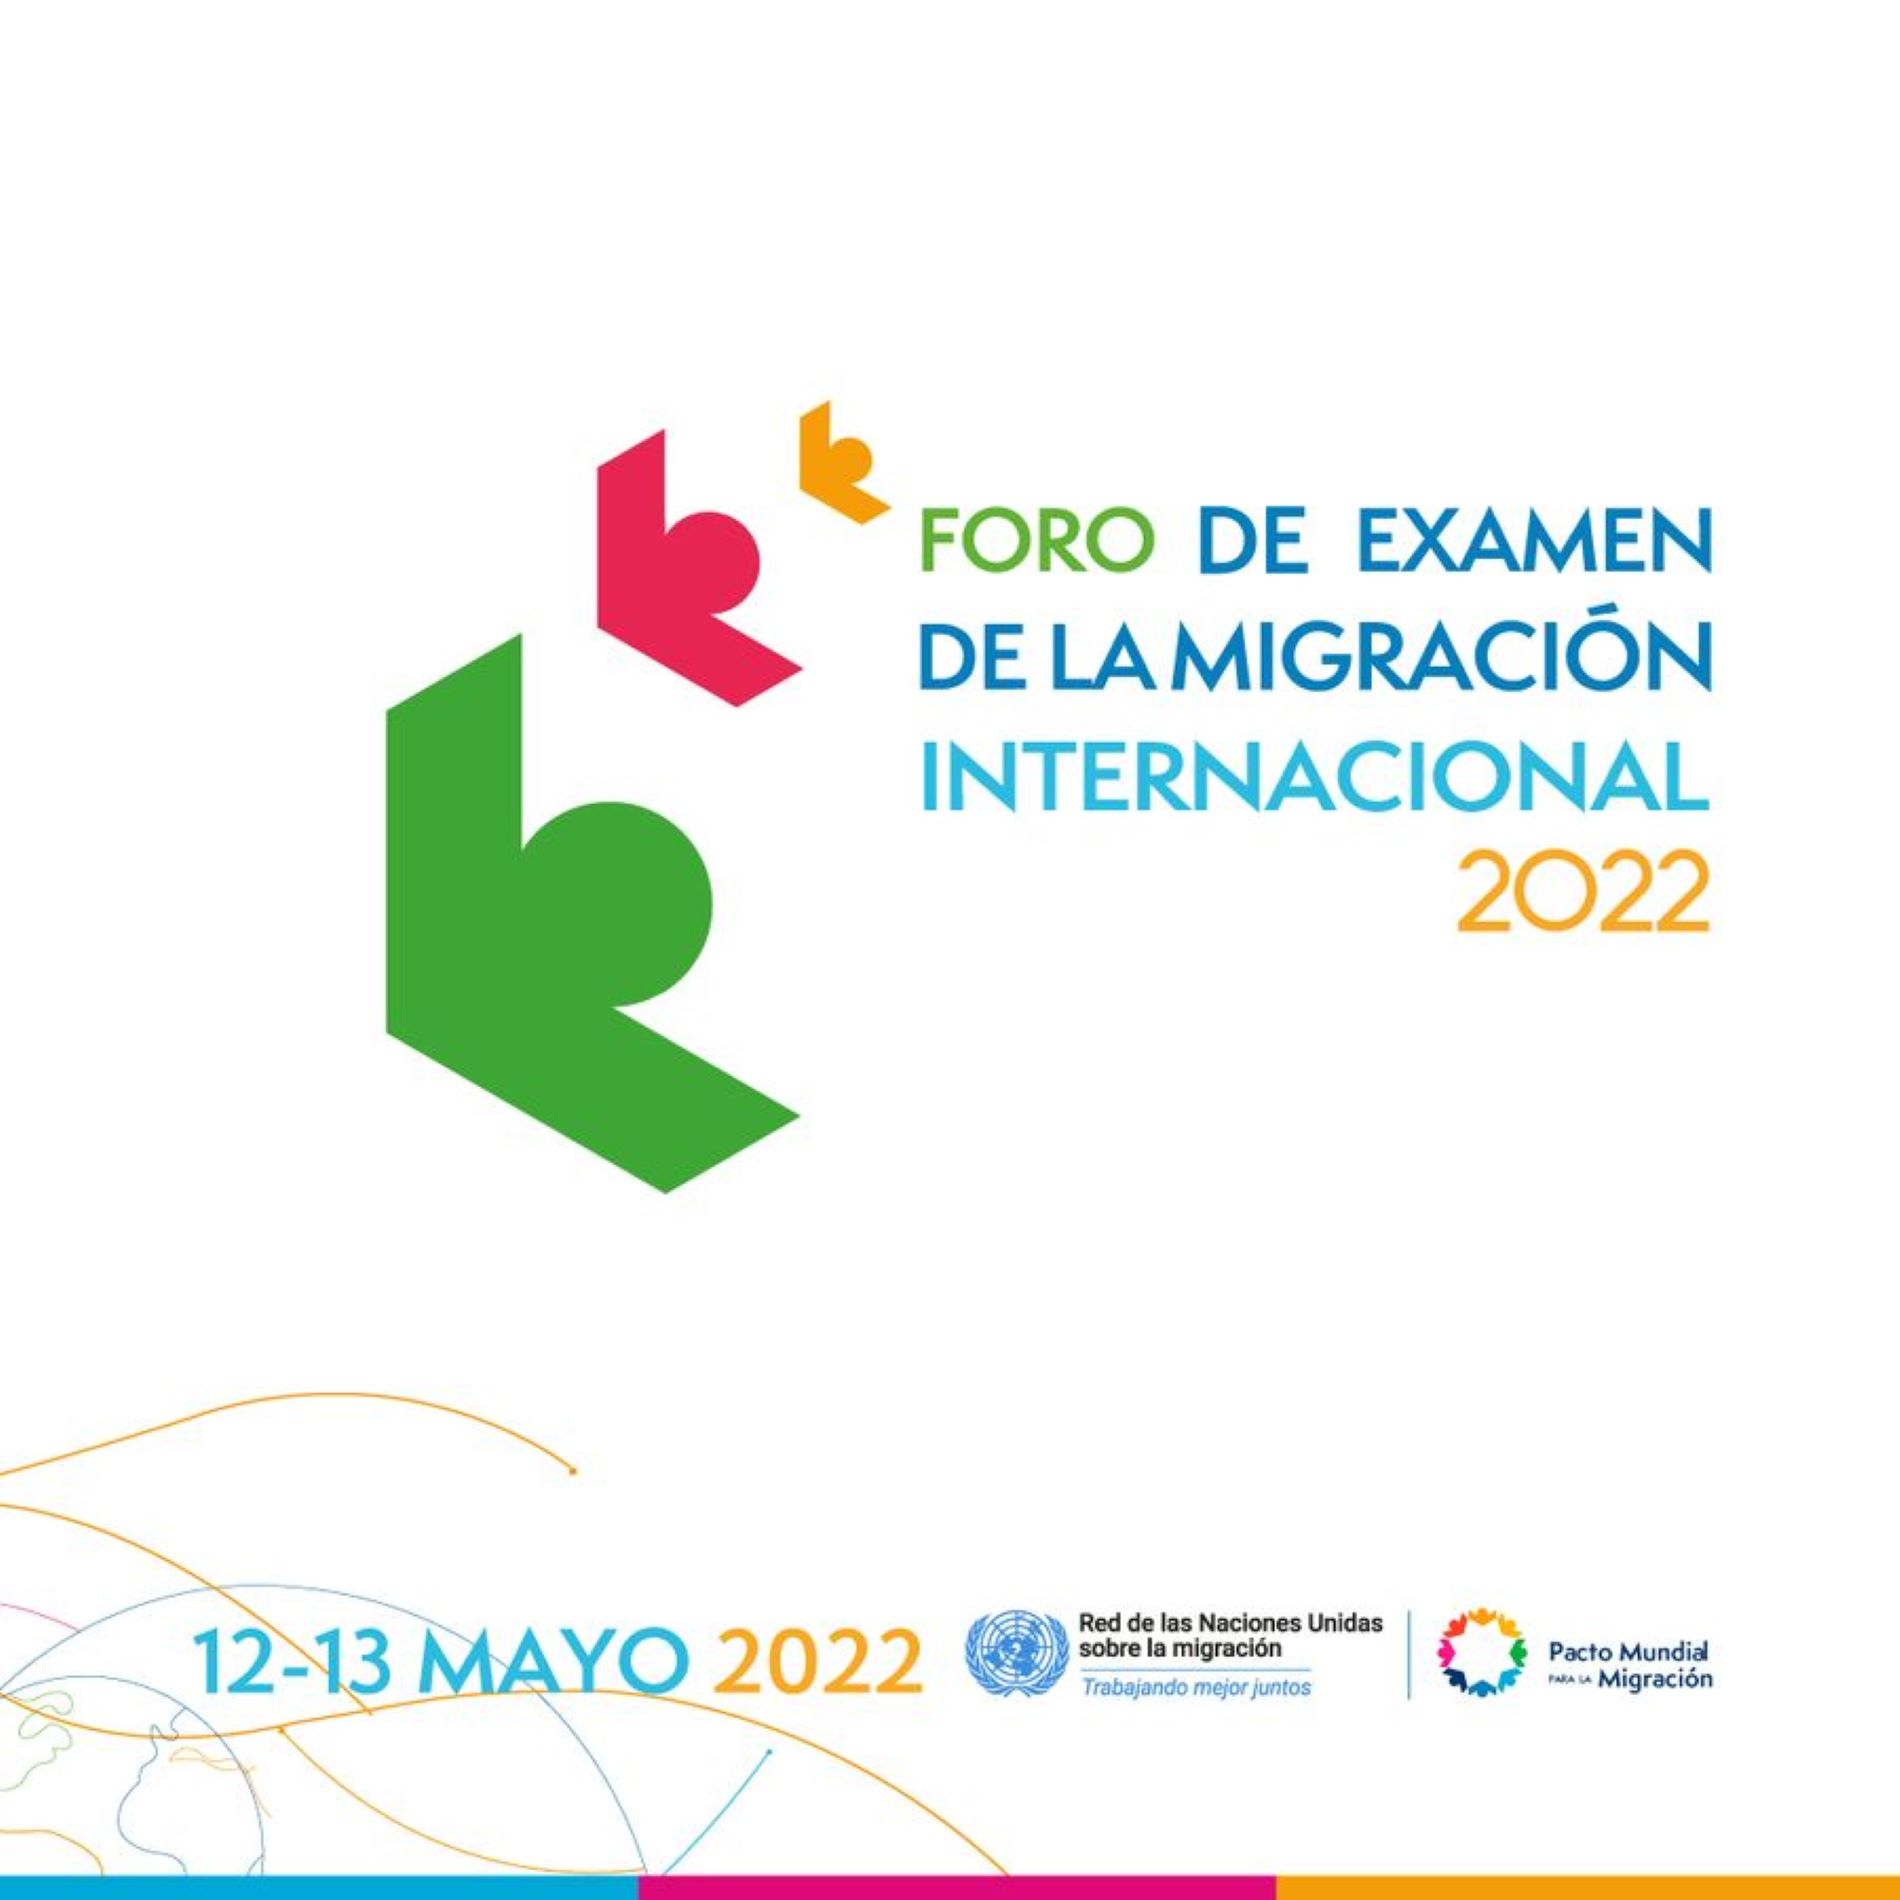 El primer Foro de Examen de la Migración Internacional tendrá lugar en la sede de Naciones Unidas en Nueva York del 17 al 20 de mayo de 2022